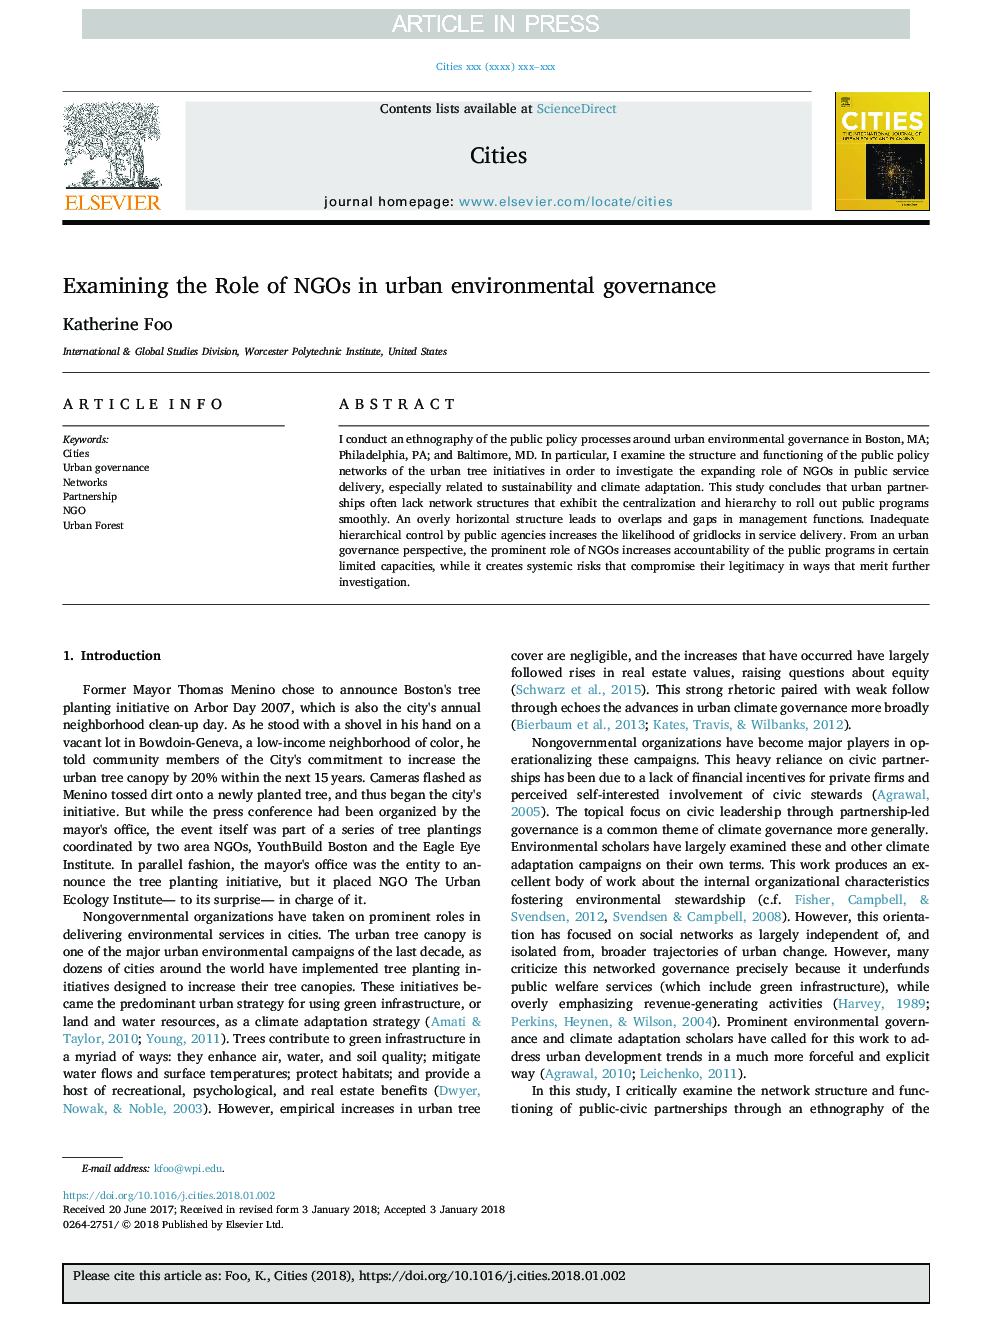 بررسی نقش سازمان های غیر دولتی در حاکمیت محیط زیست شهری 